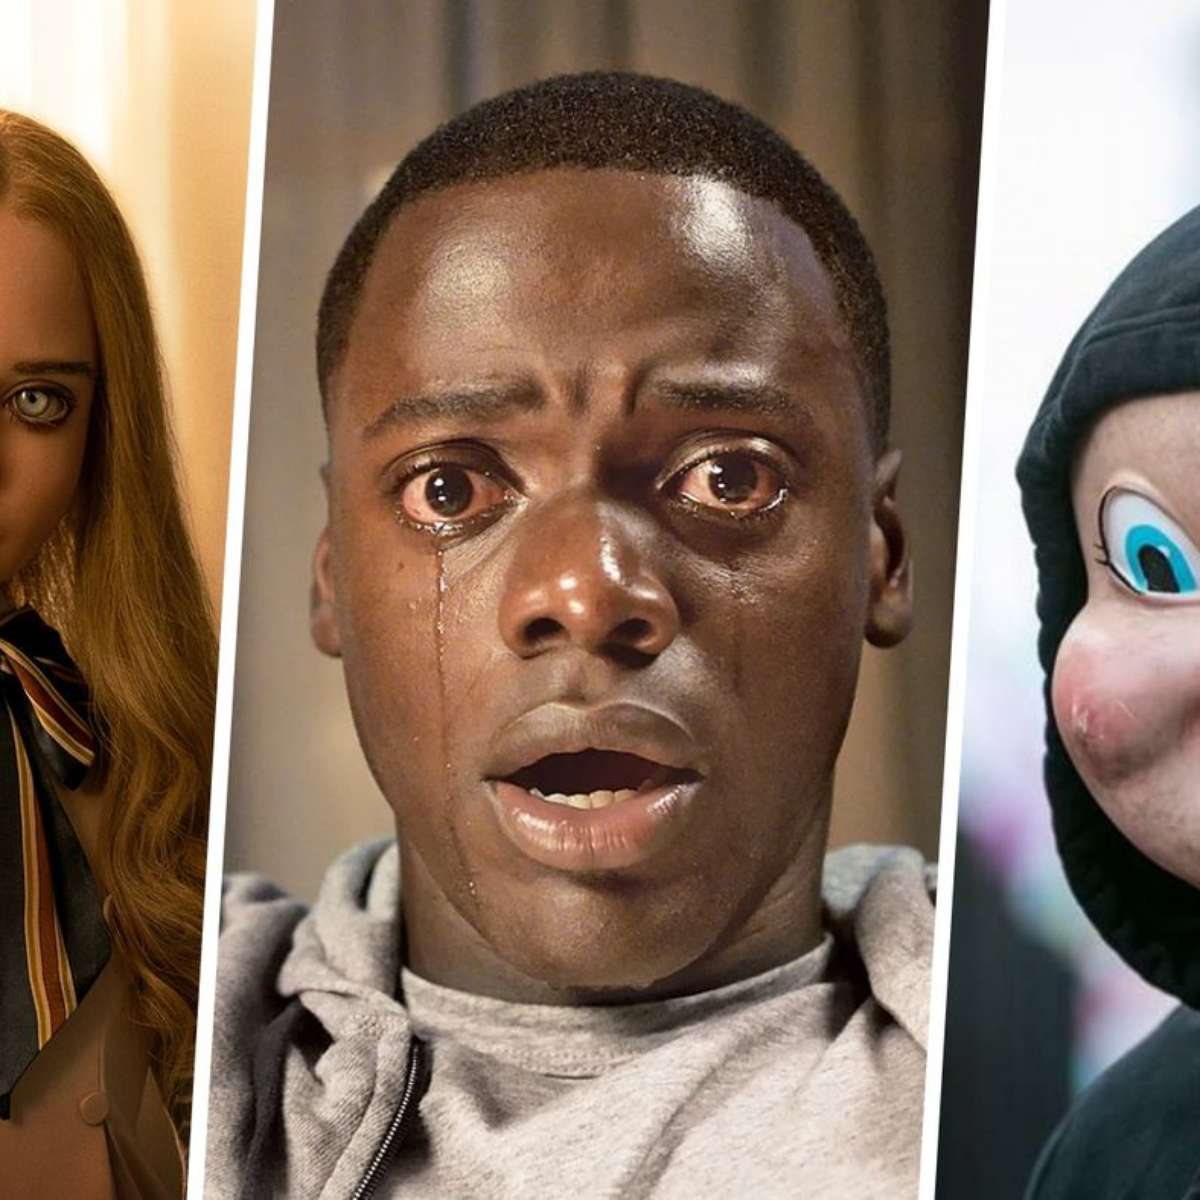 Os 10 melhores filmes de terror da Blumhouse